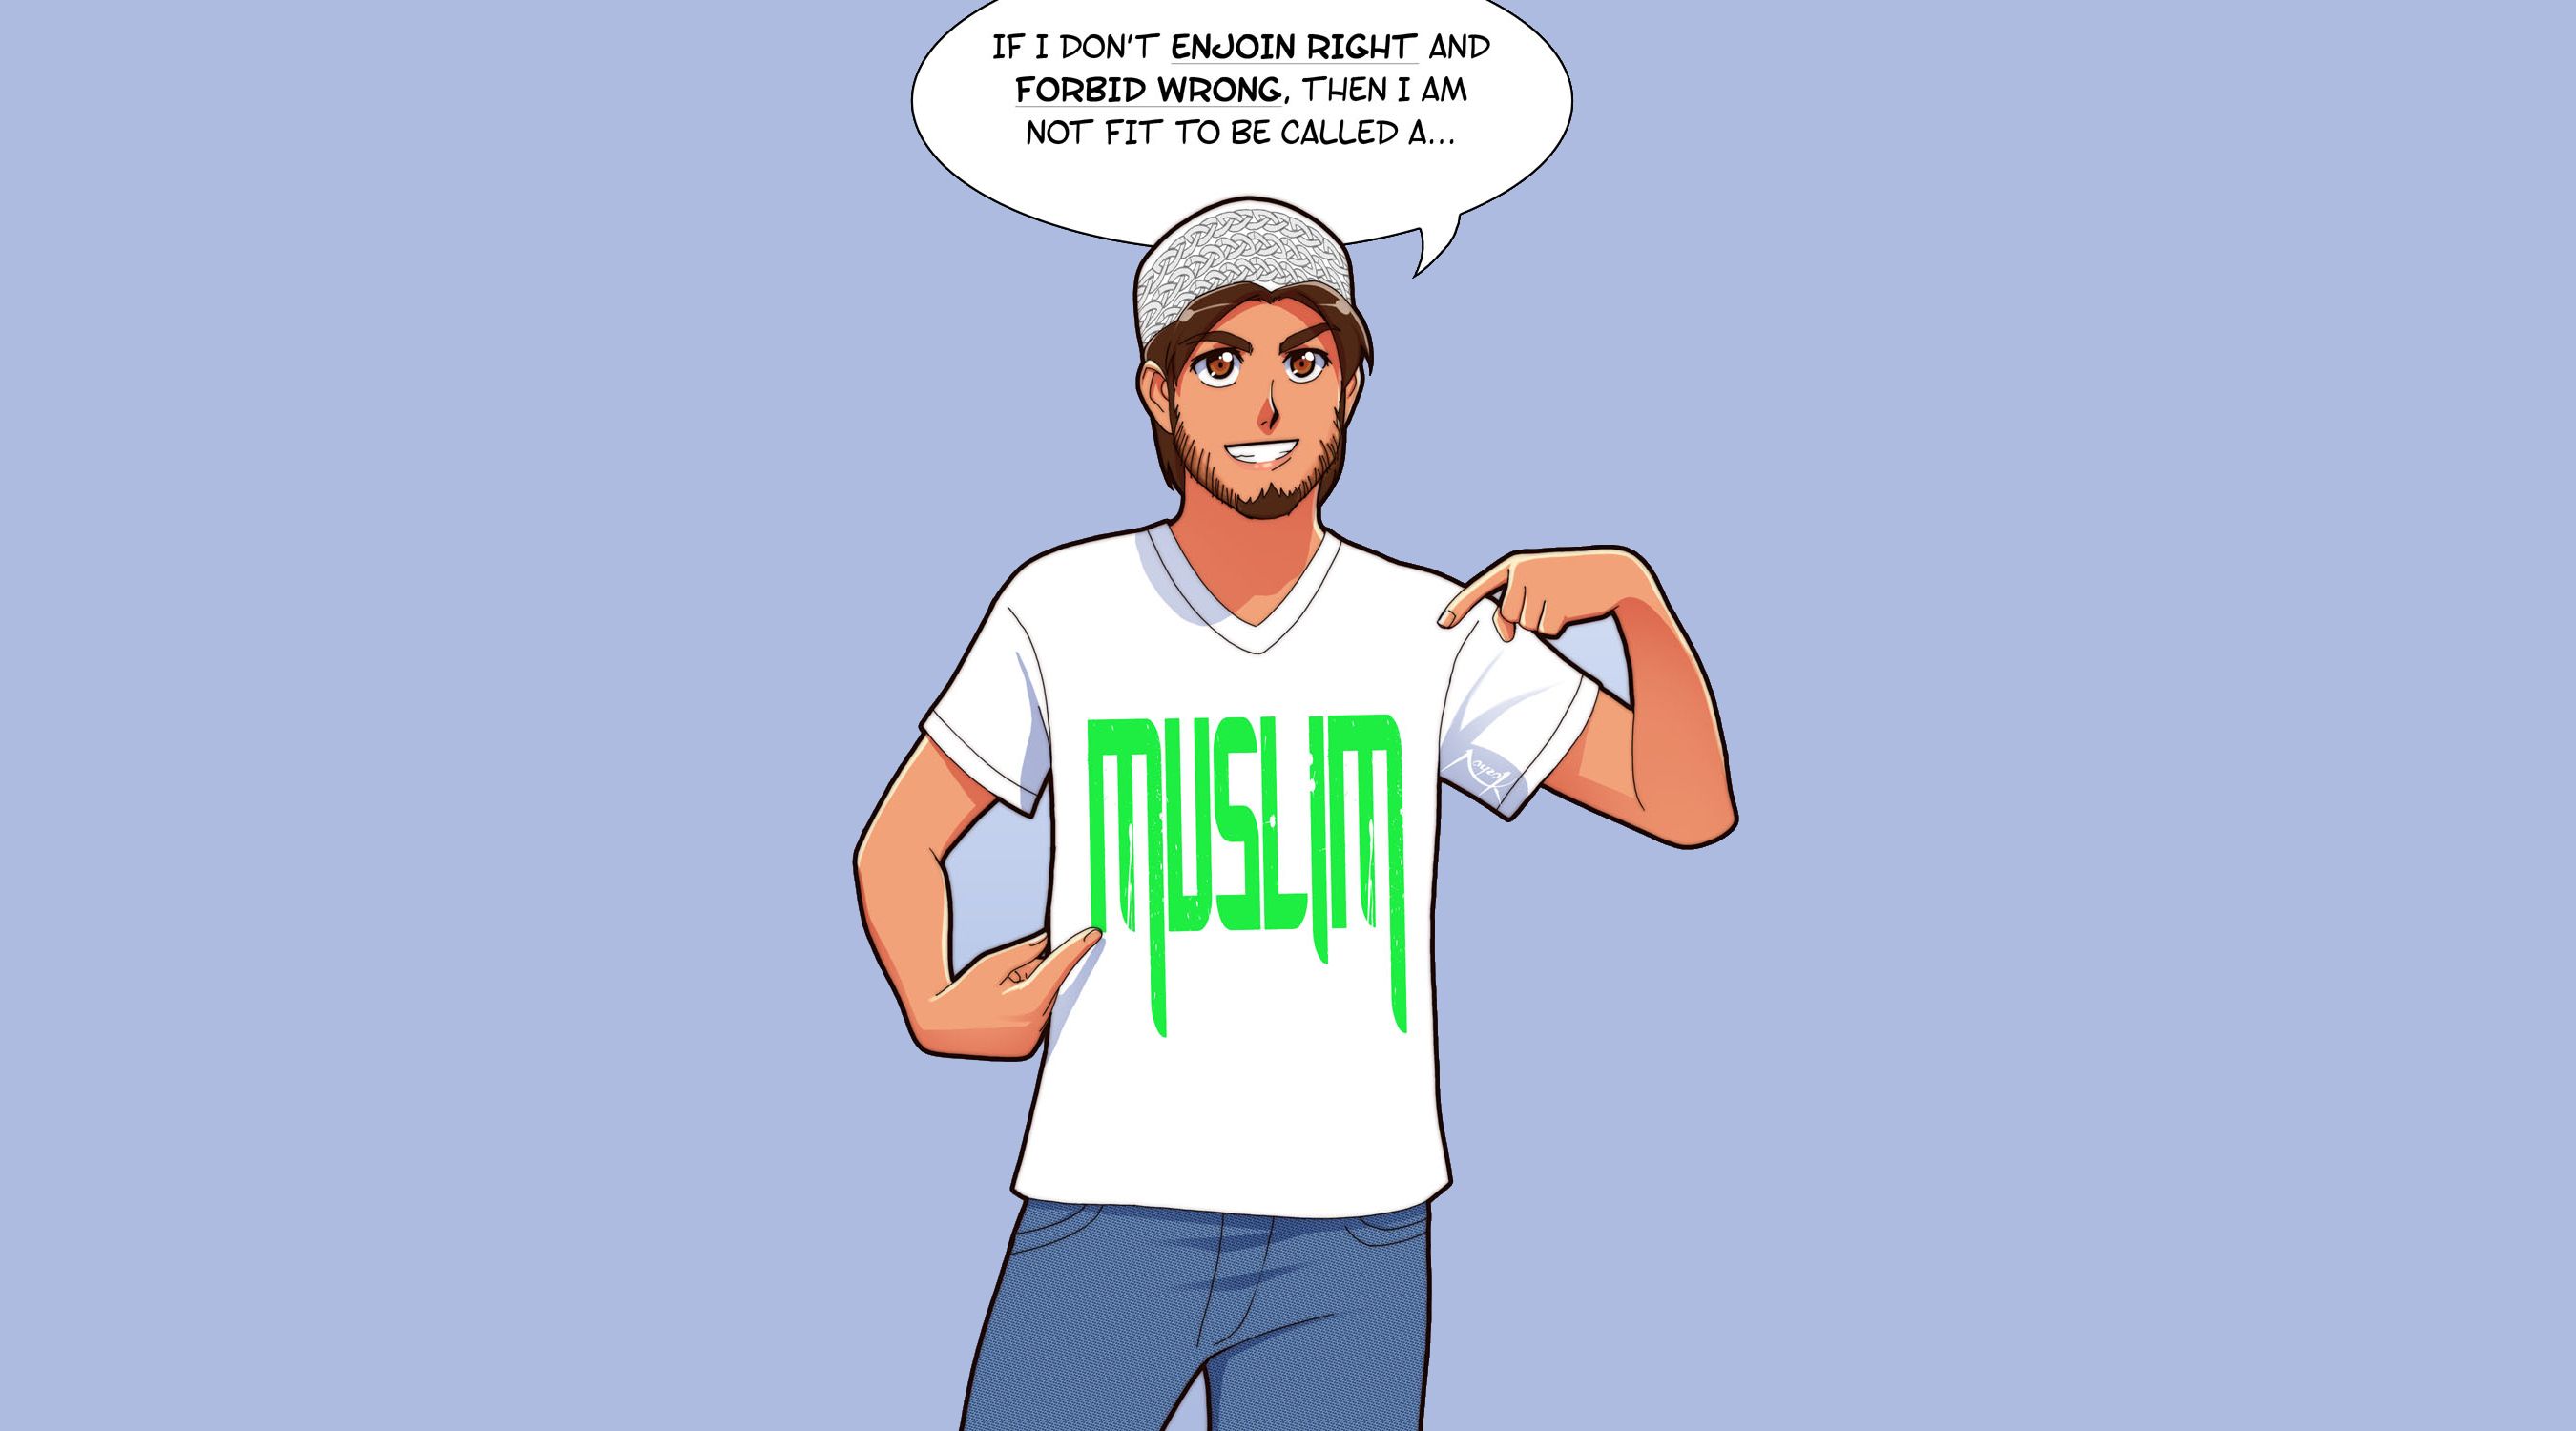 islam, islamic, religious